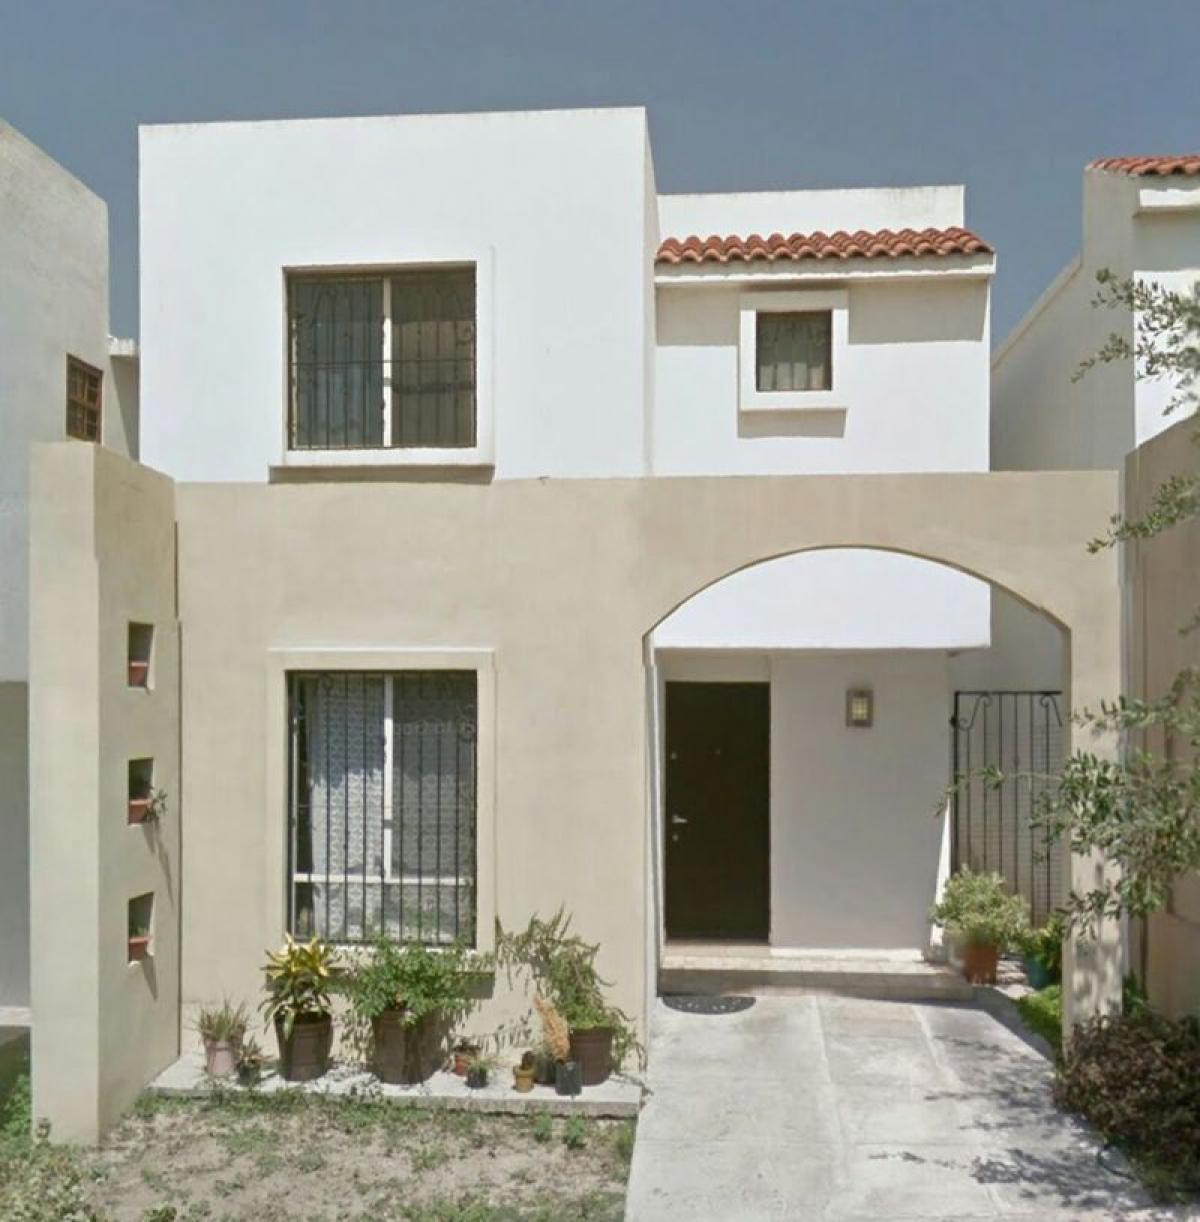 Picture of Home For Sale in Garcia, Nuevo Leon, Mexico